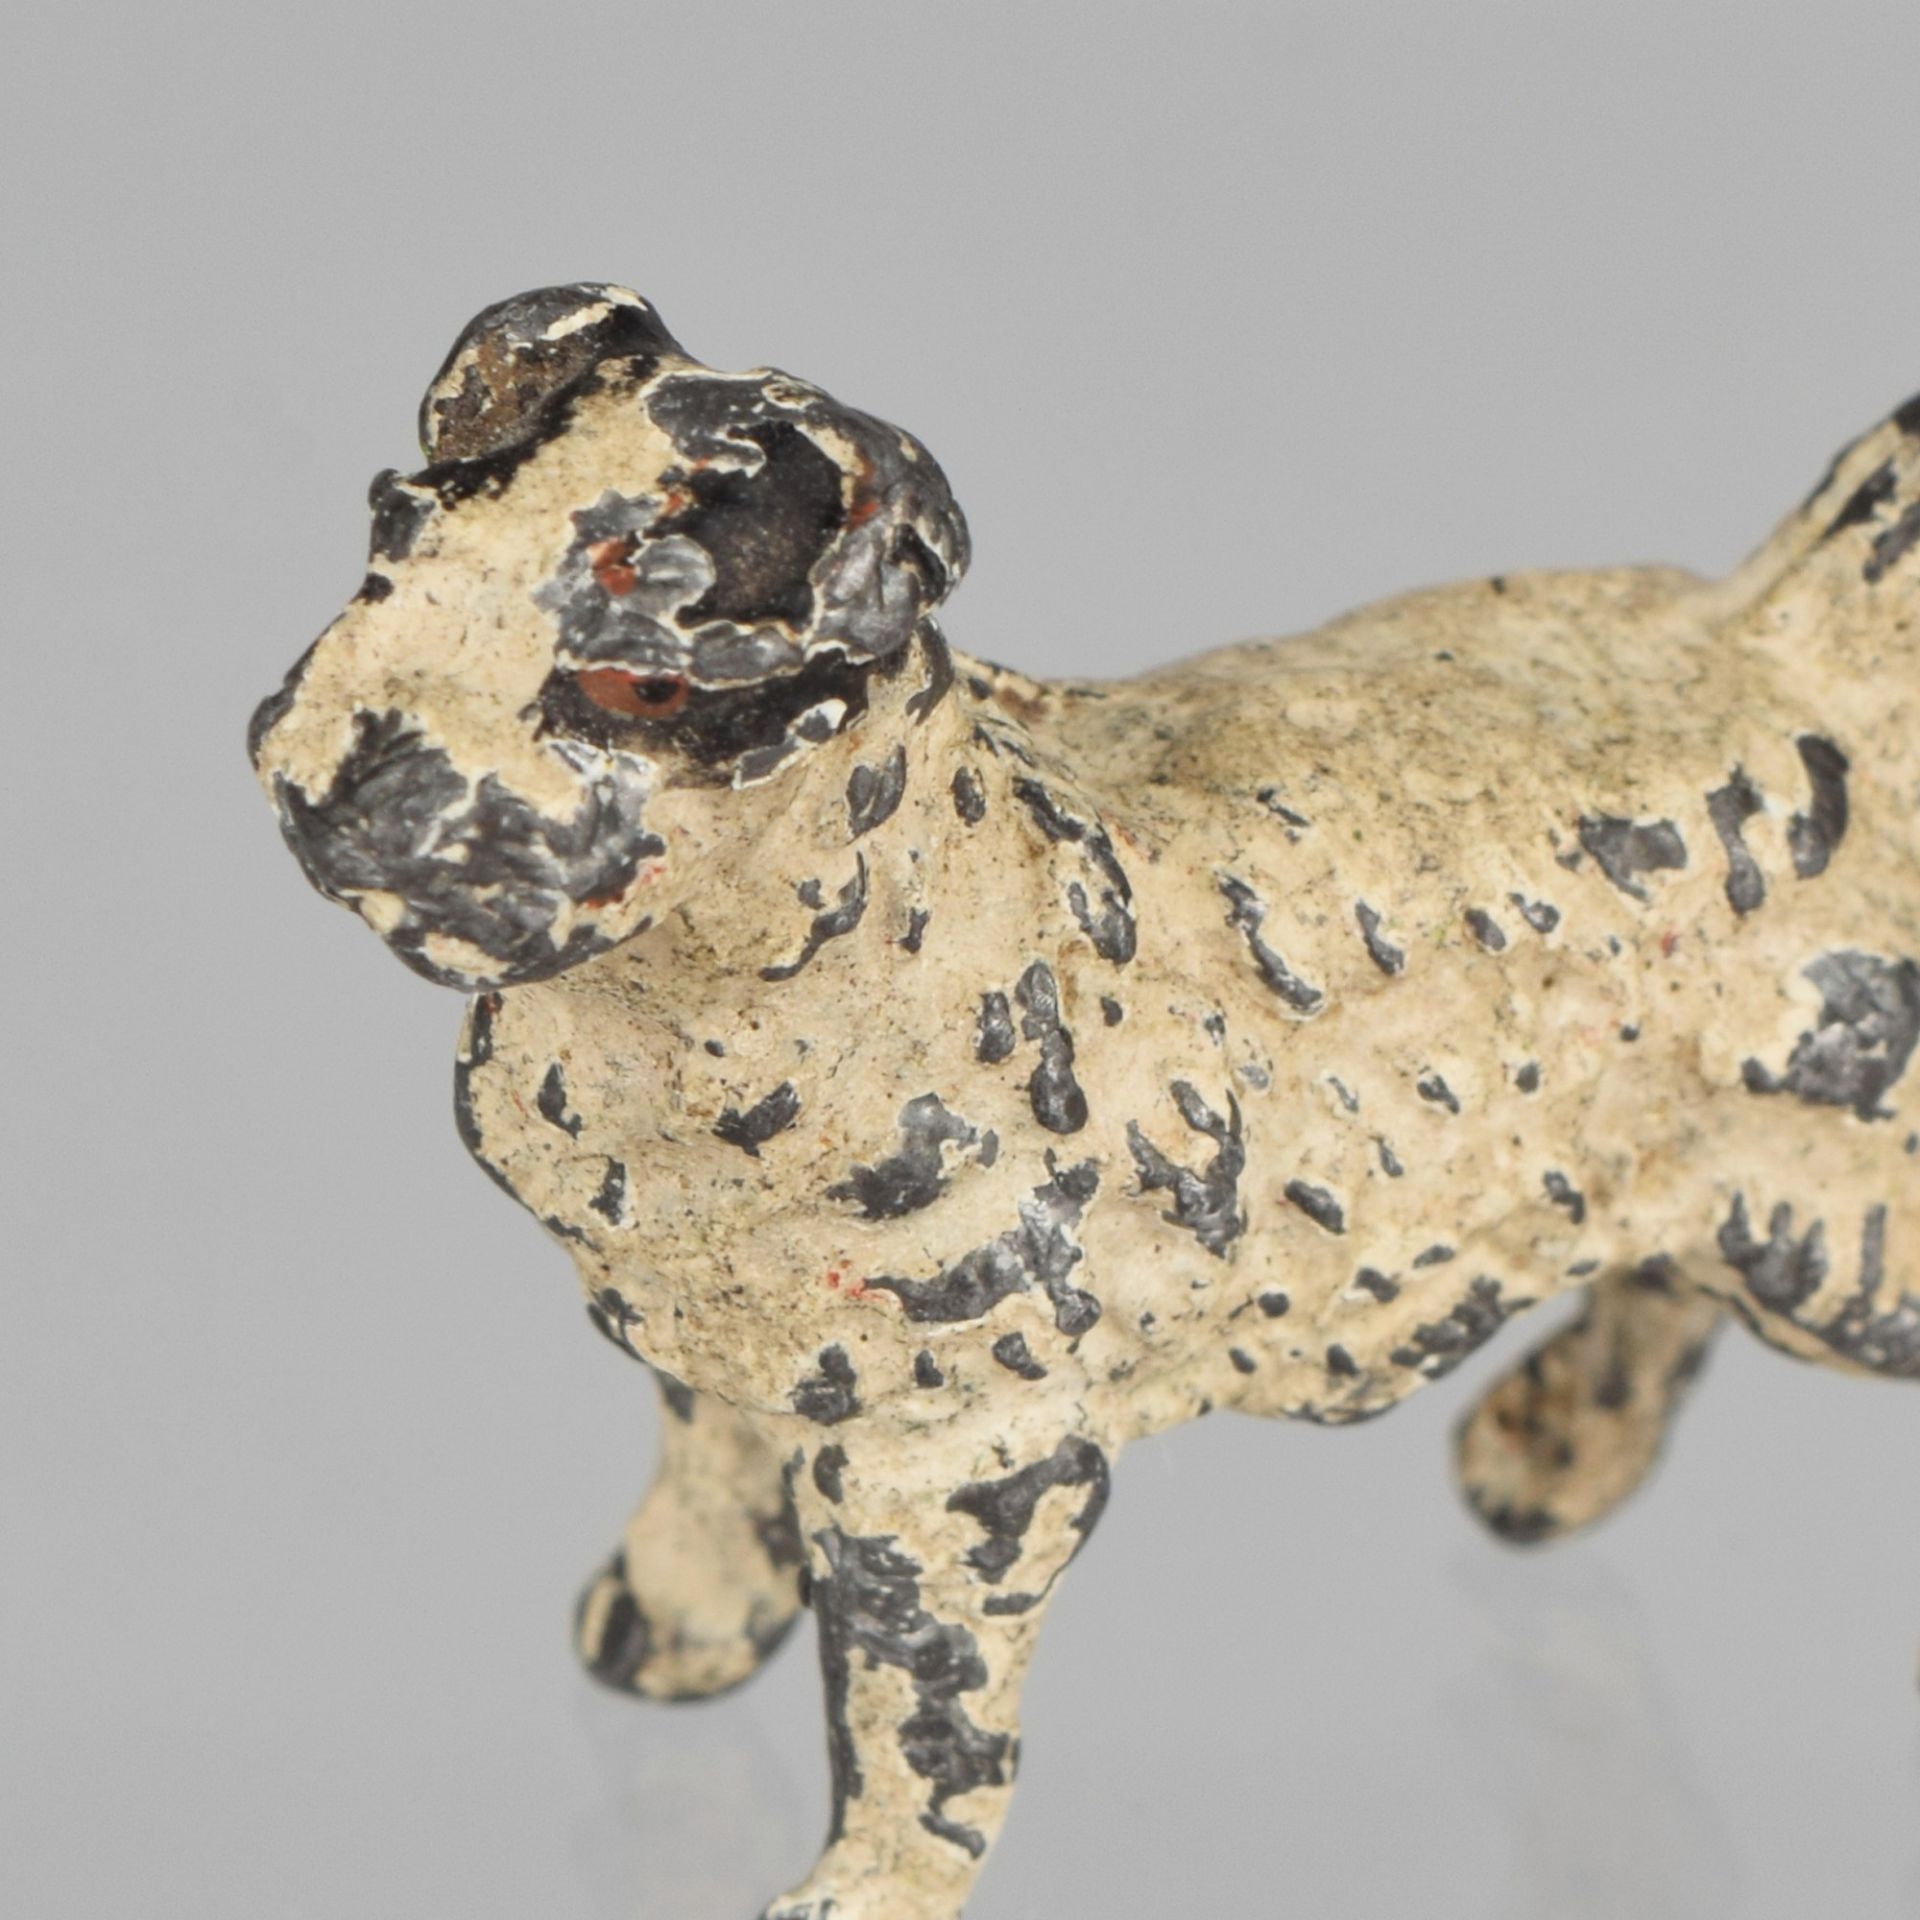 Miniatur Blei kaltbemalt, stehender Hund mit weißem Fell, Altersspuren, H ca. 2,5 cm, L ca. 3 cm, im